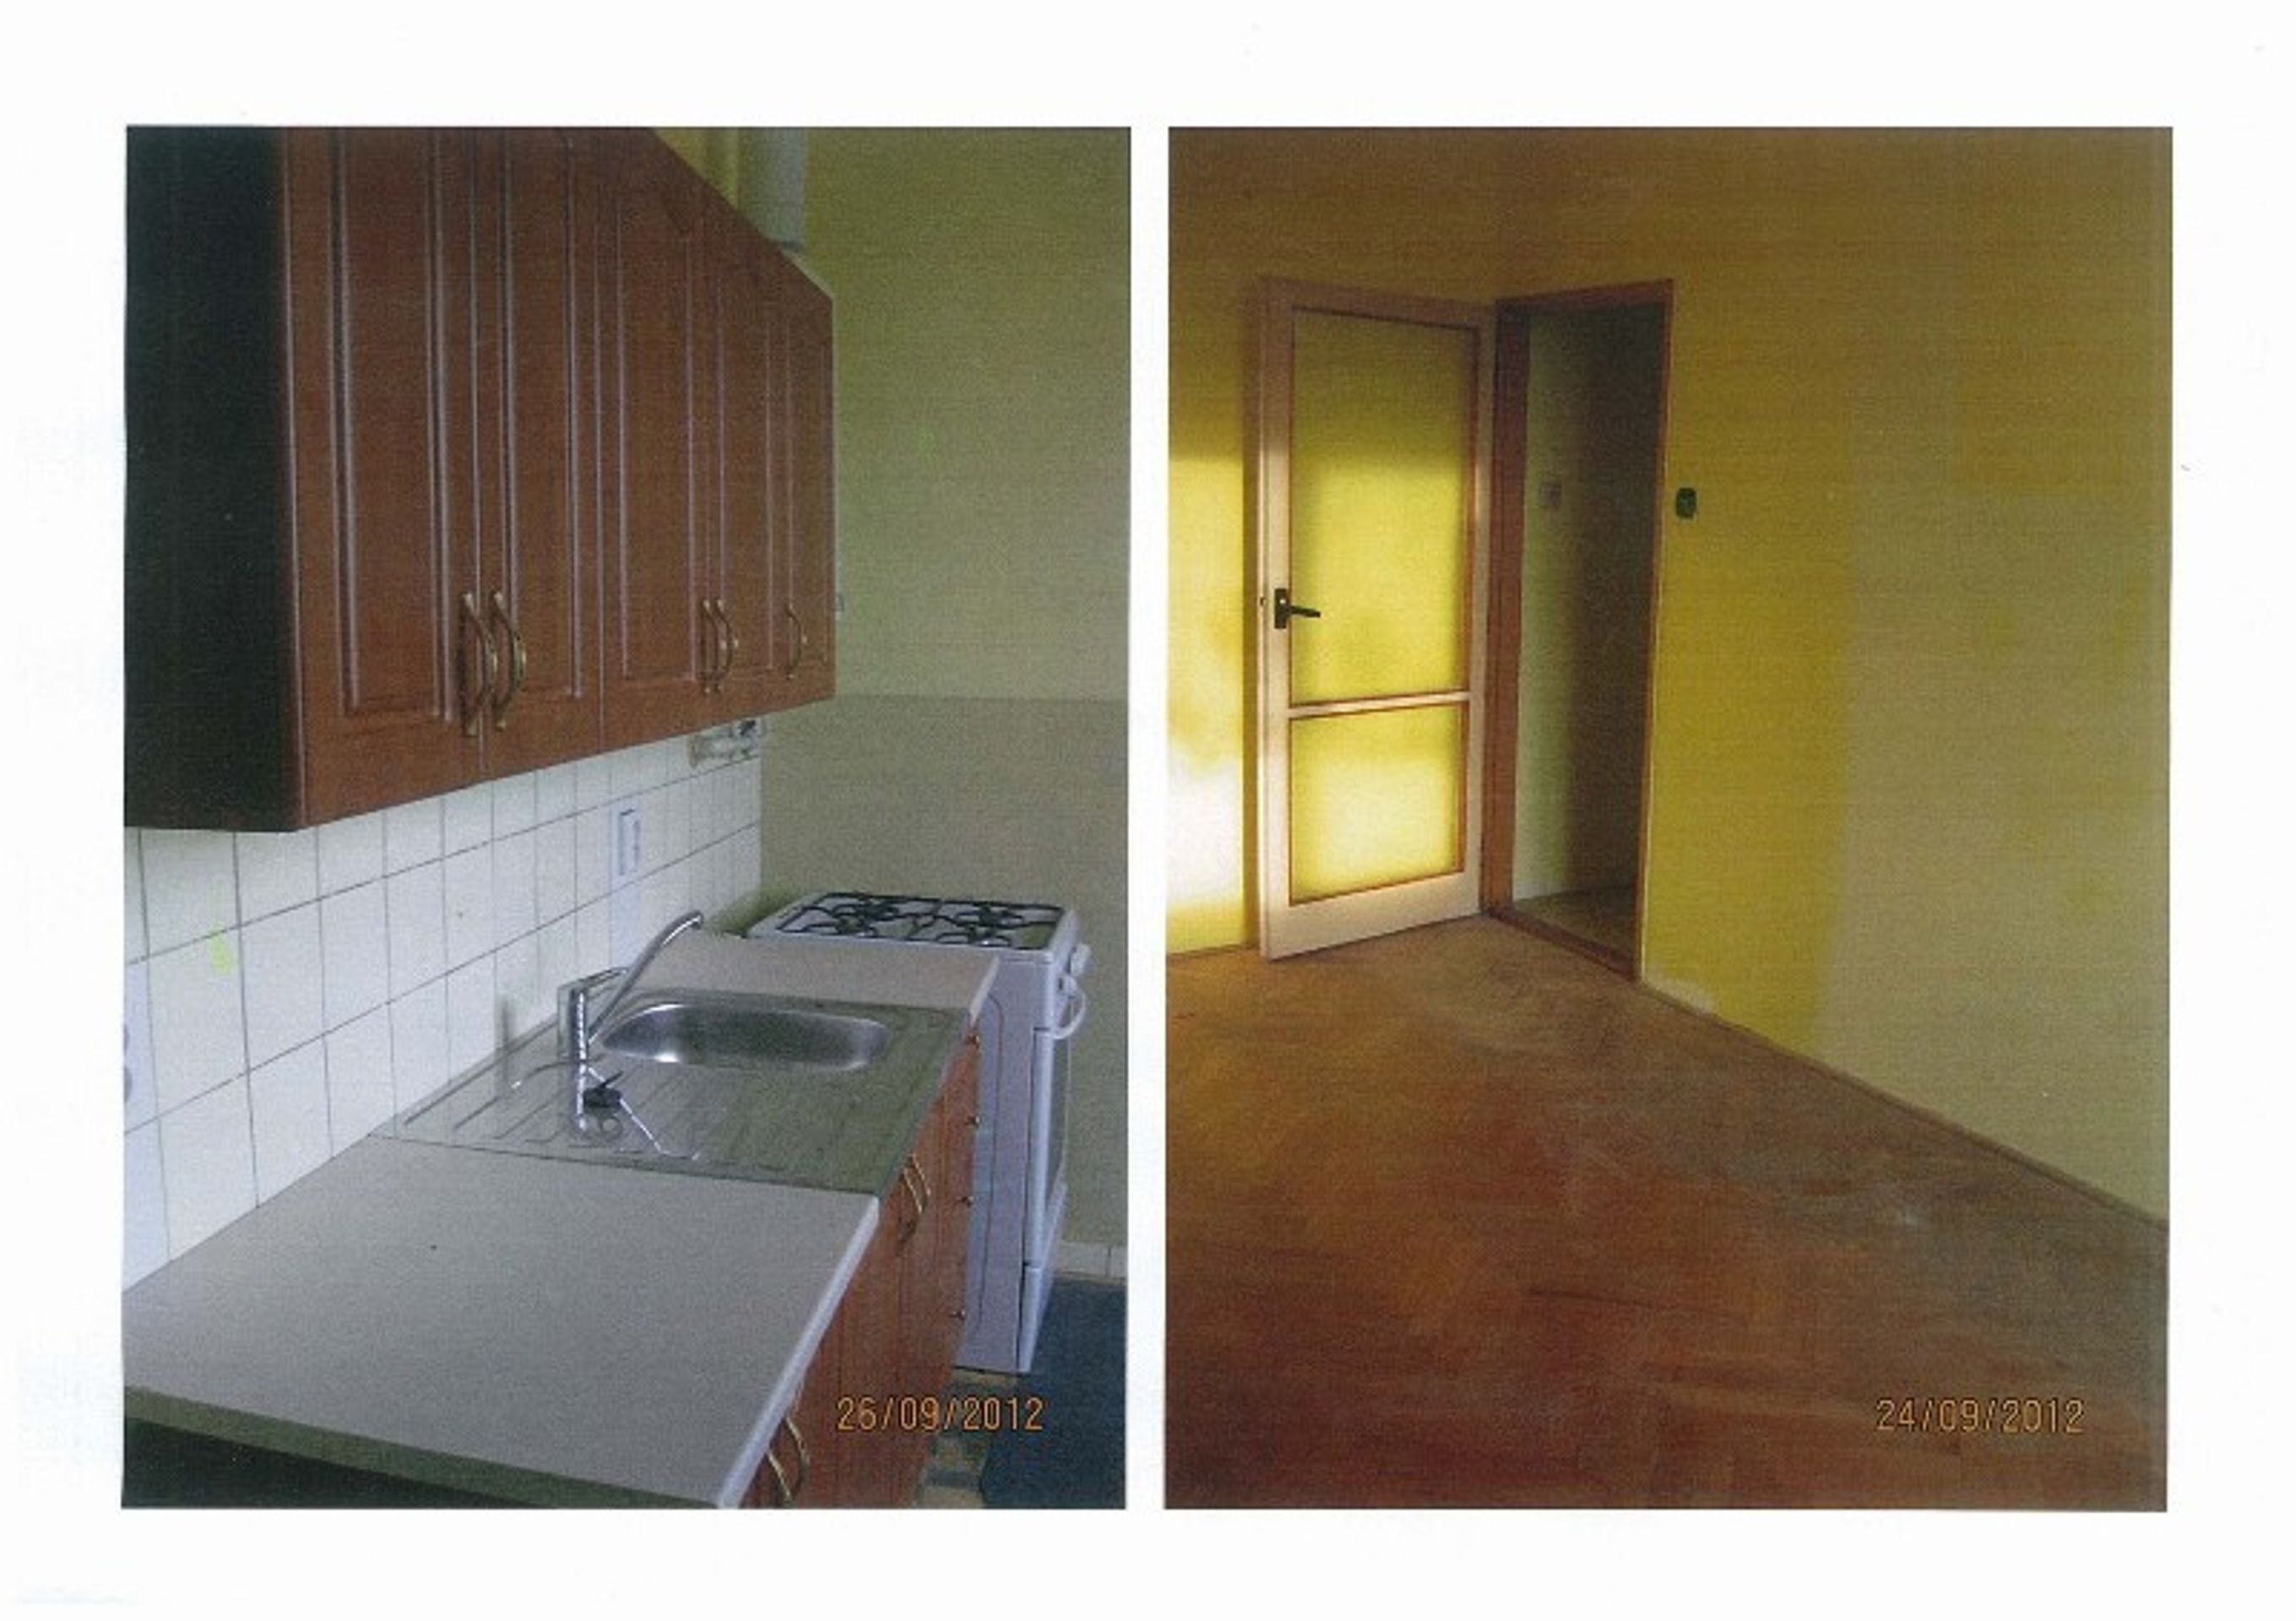 Prodej majetku: 02 byt Plzeň - Jižní předměstí - 2 - GALERIE: Prodej bytu v Plzni - Jižní předměstí 02 (2/4)